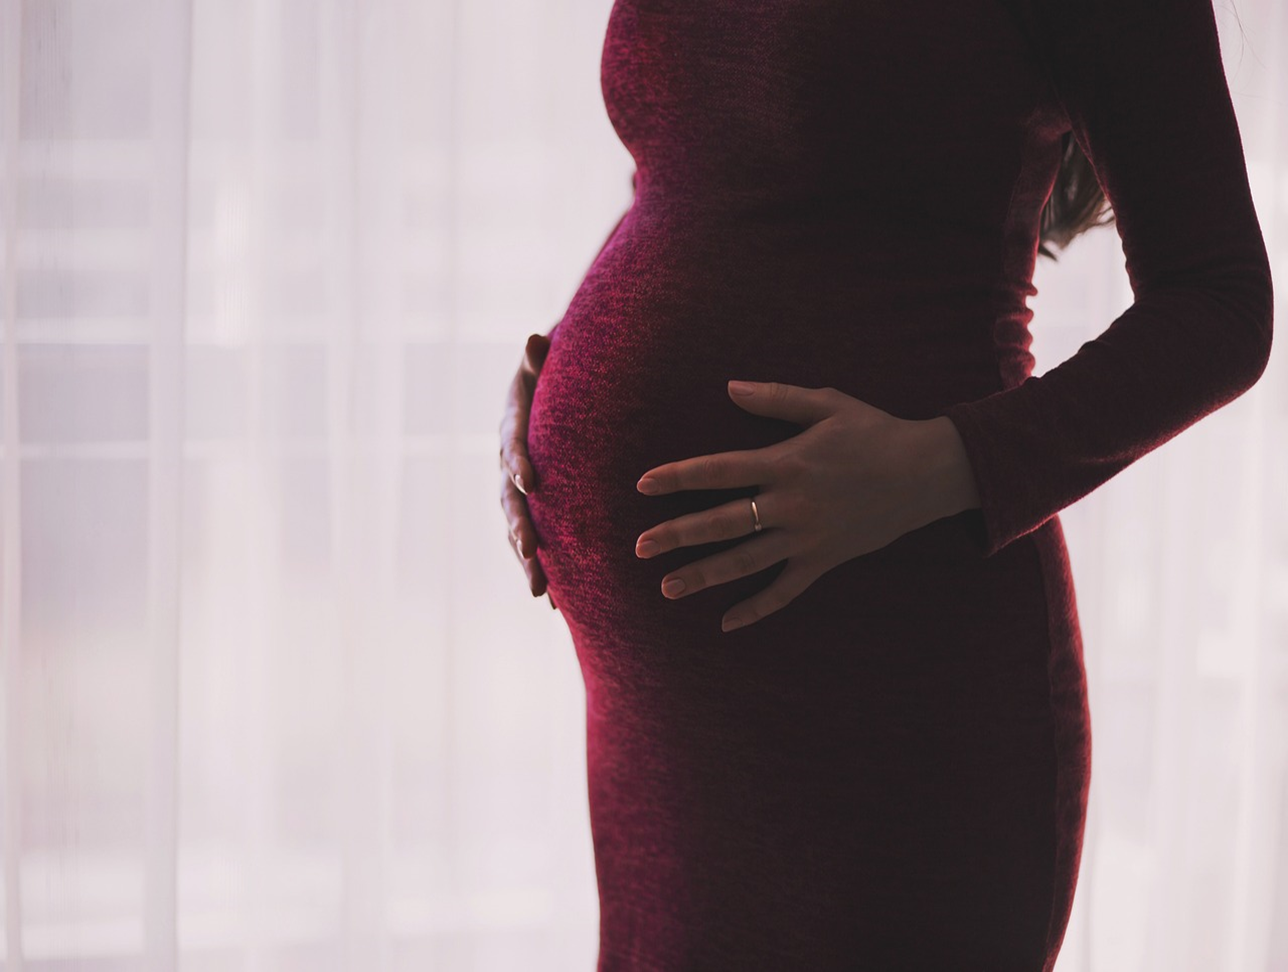 Women’s Health Tips After Pregnancy : प्रसव के बाद महिलाओं के स्वास्थ्य के लिए सुझाव